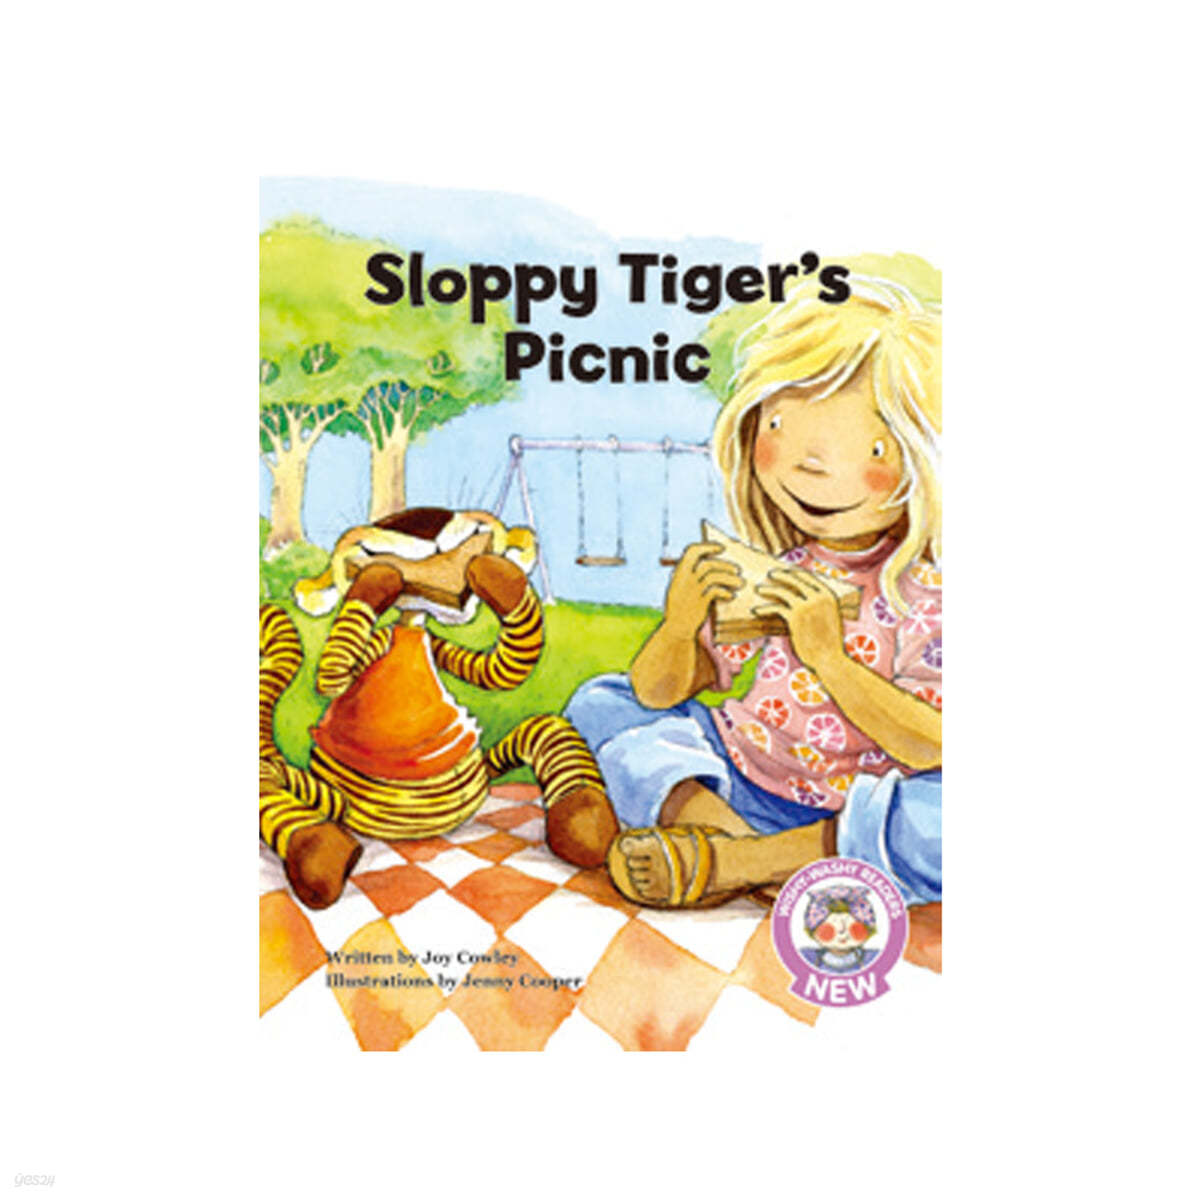 Sloppy Tiger's Picnic